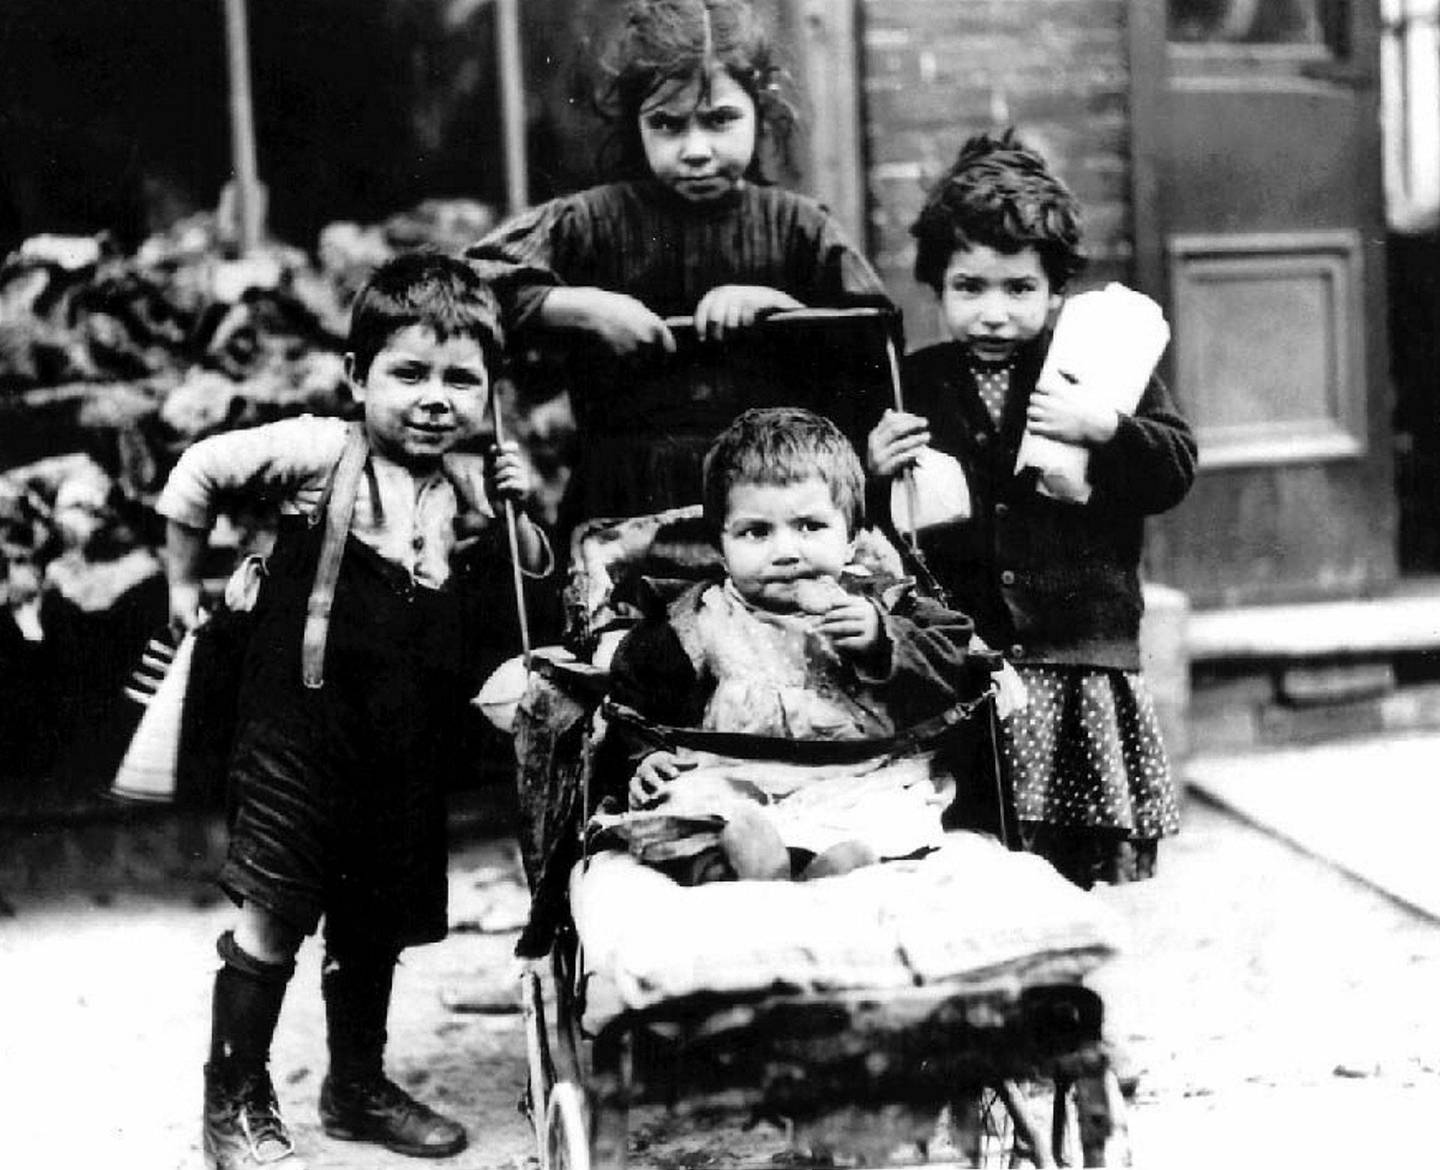 Barn måtte ofte klare seg på egen hånd mens foreldrene var lange dager på jobb. Eller så ble de bare forlatt. Fotografiet er fra Canada i 1911.
FOTO: WIKIPEDIA COMMONS